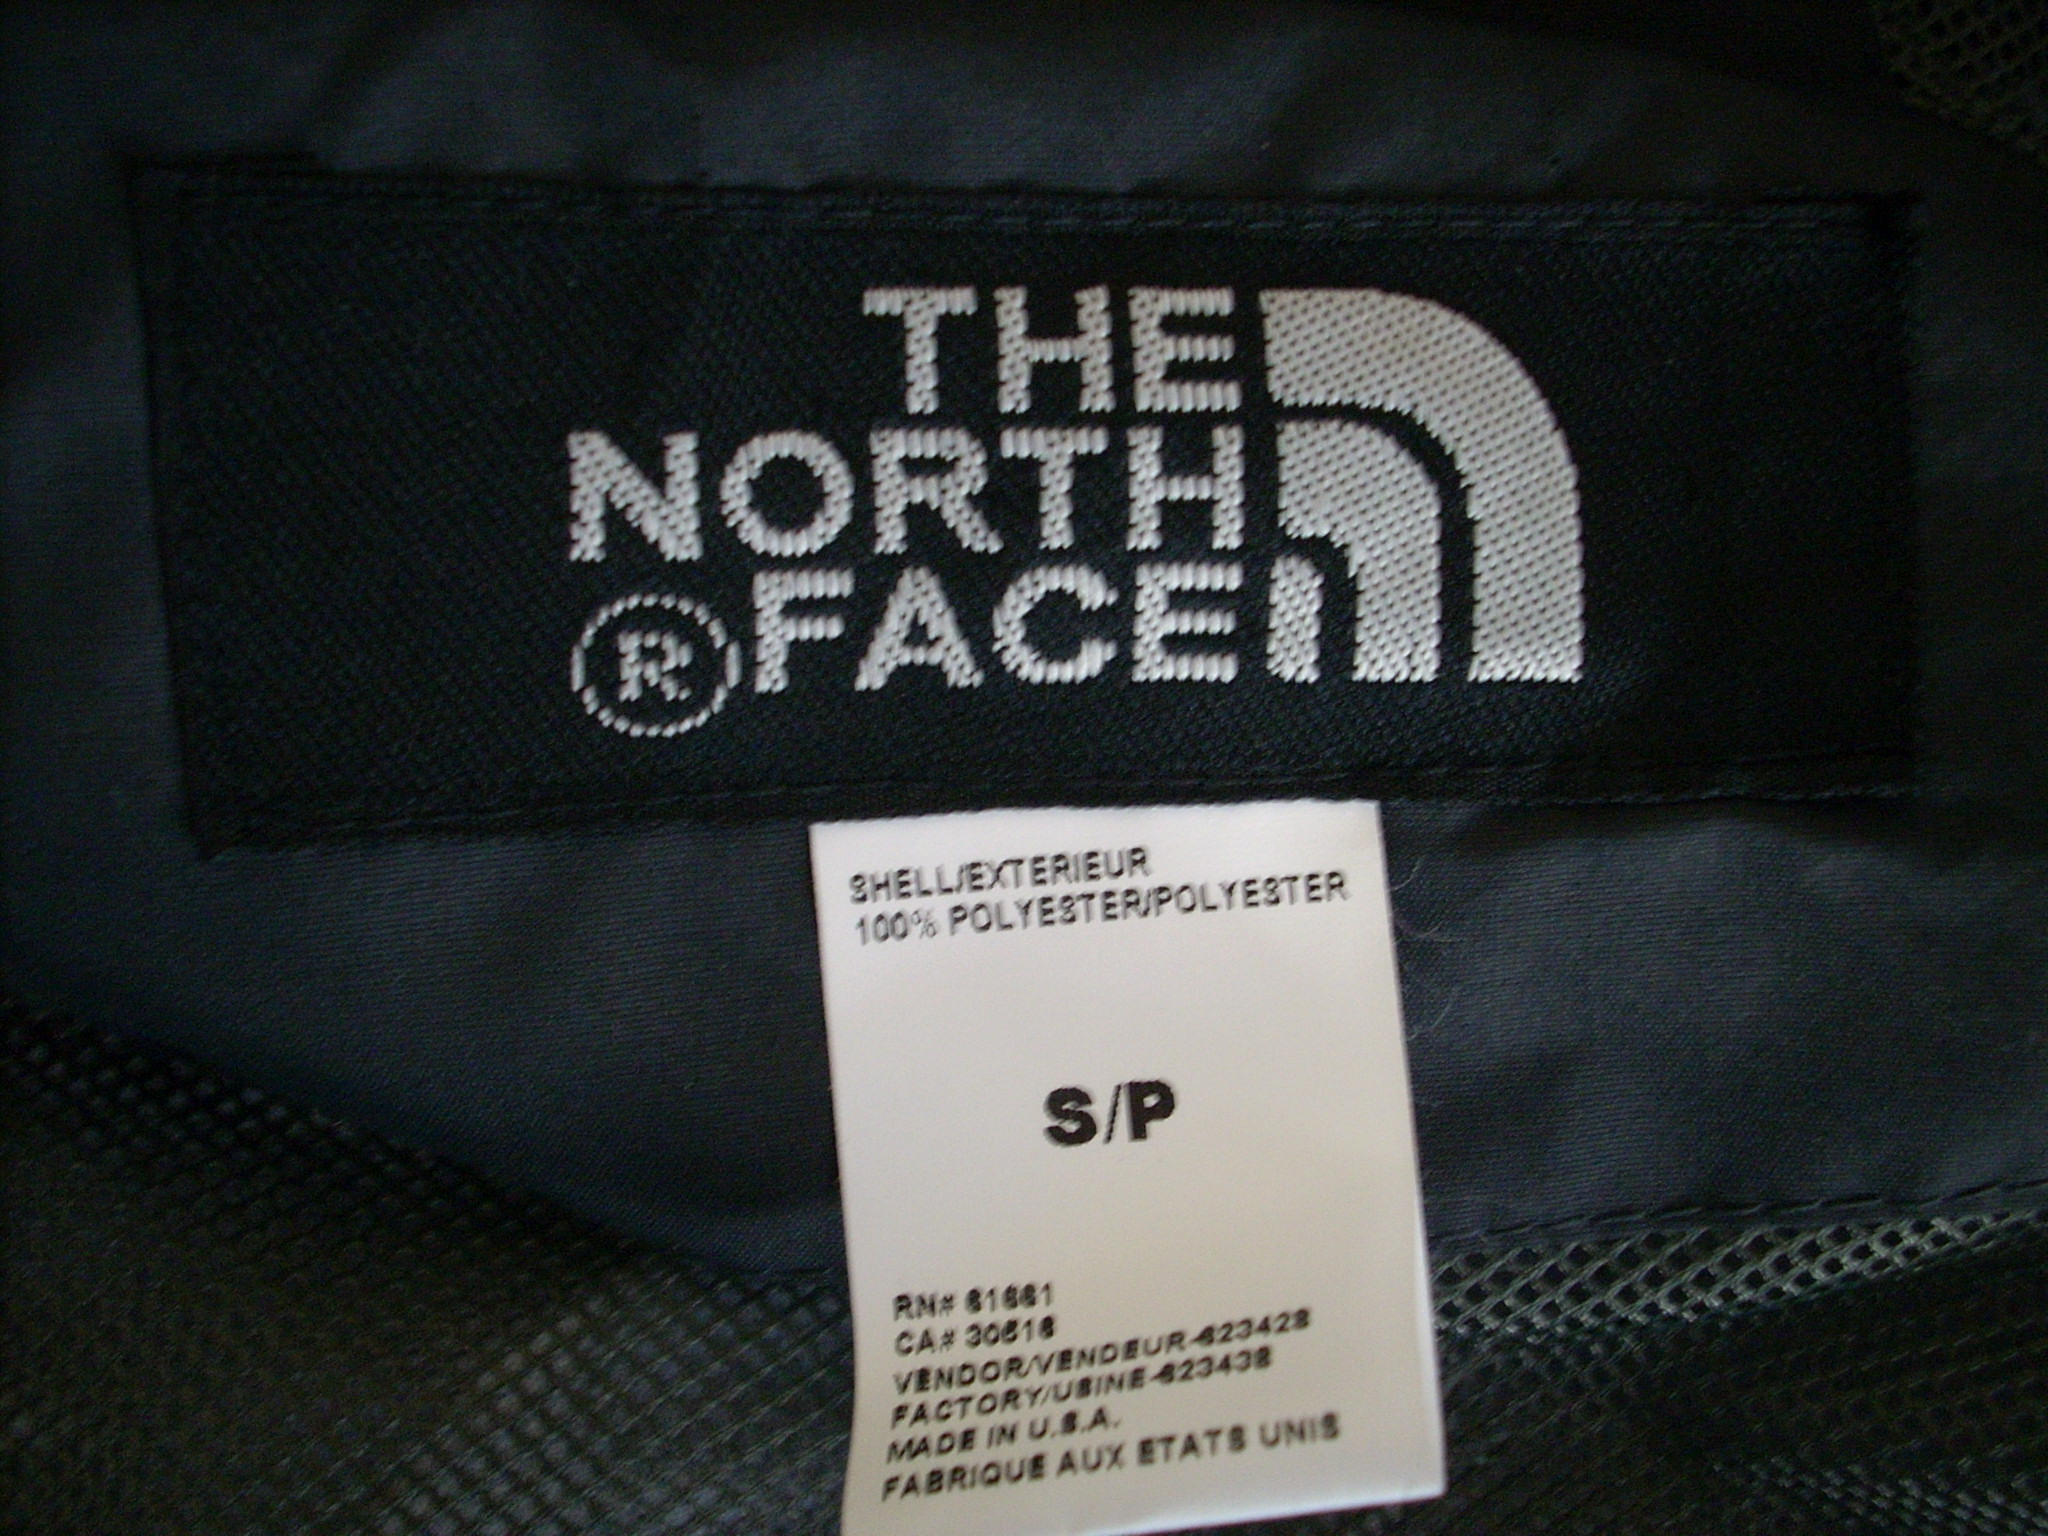 fake north face